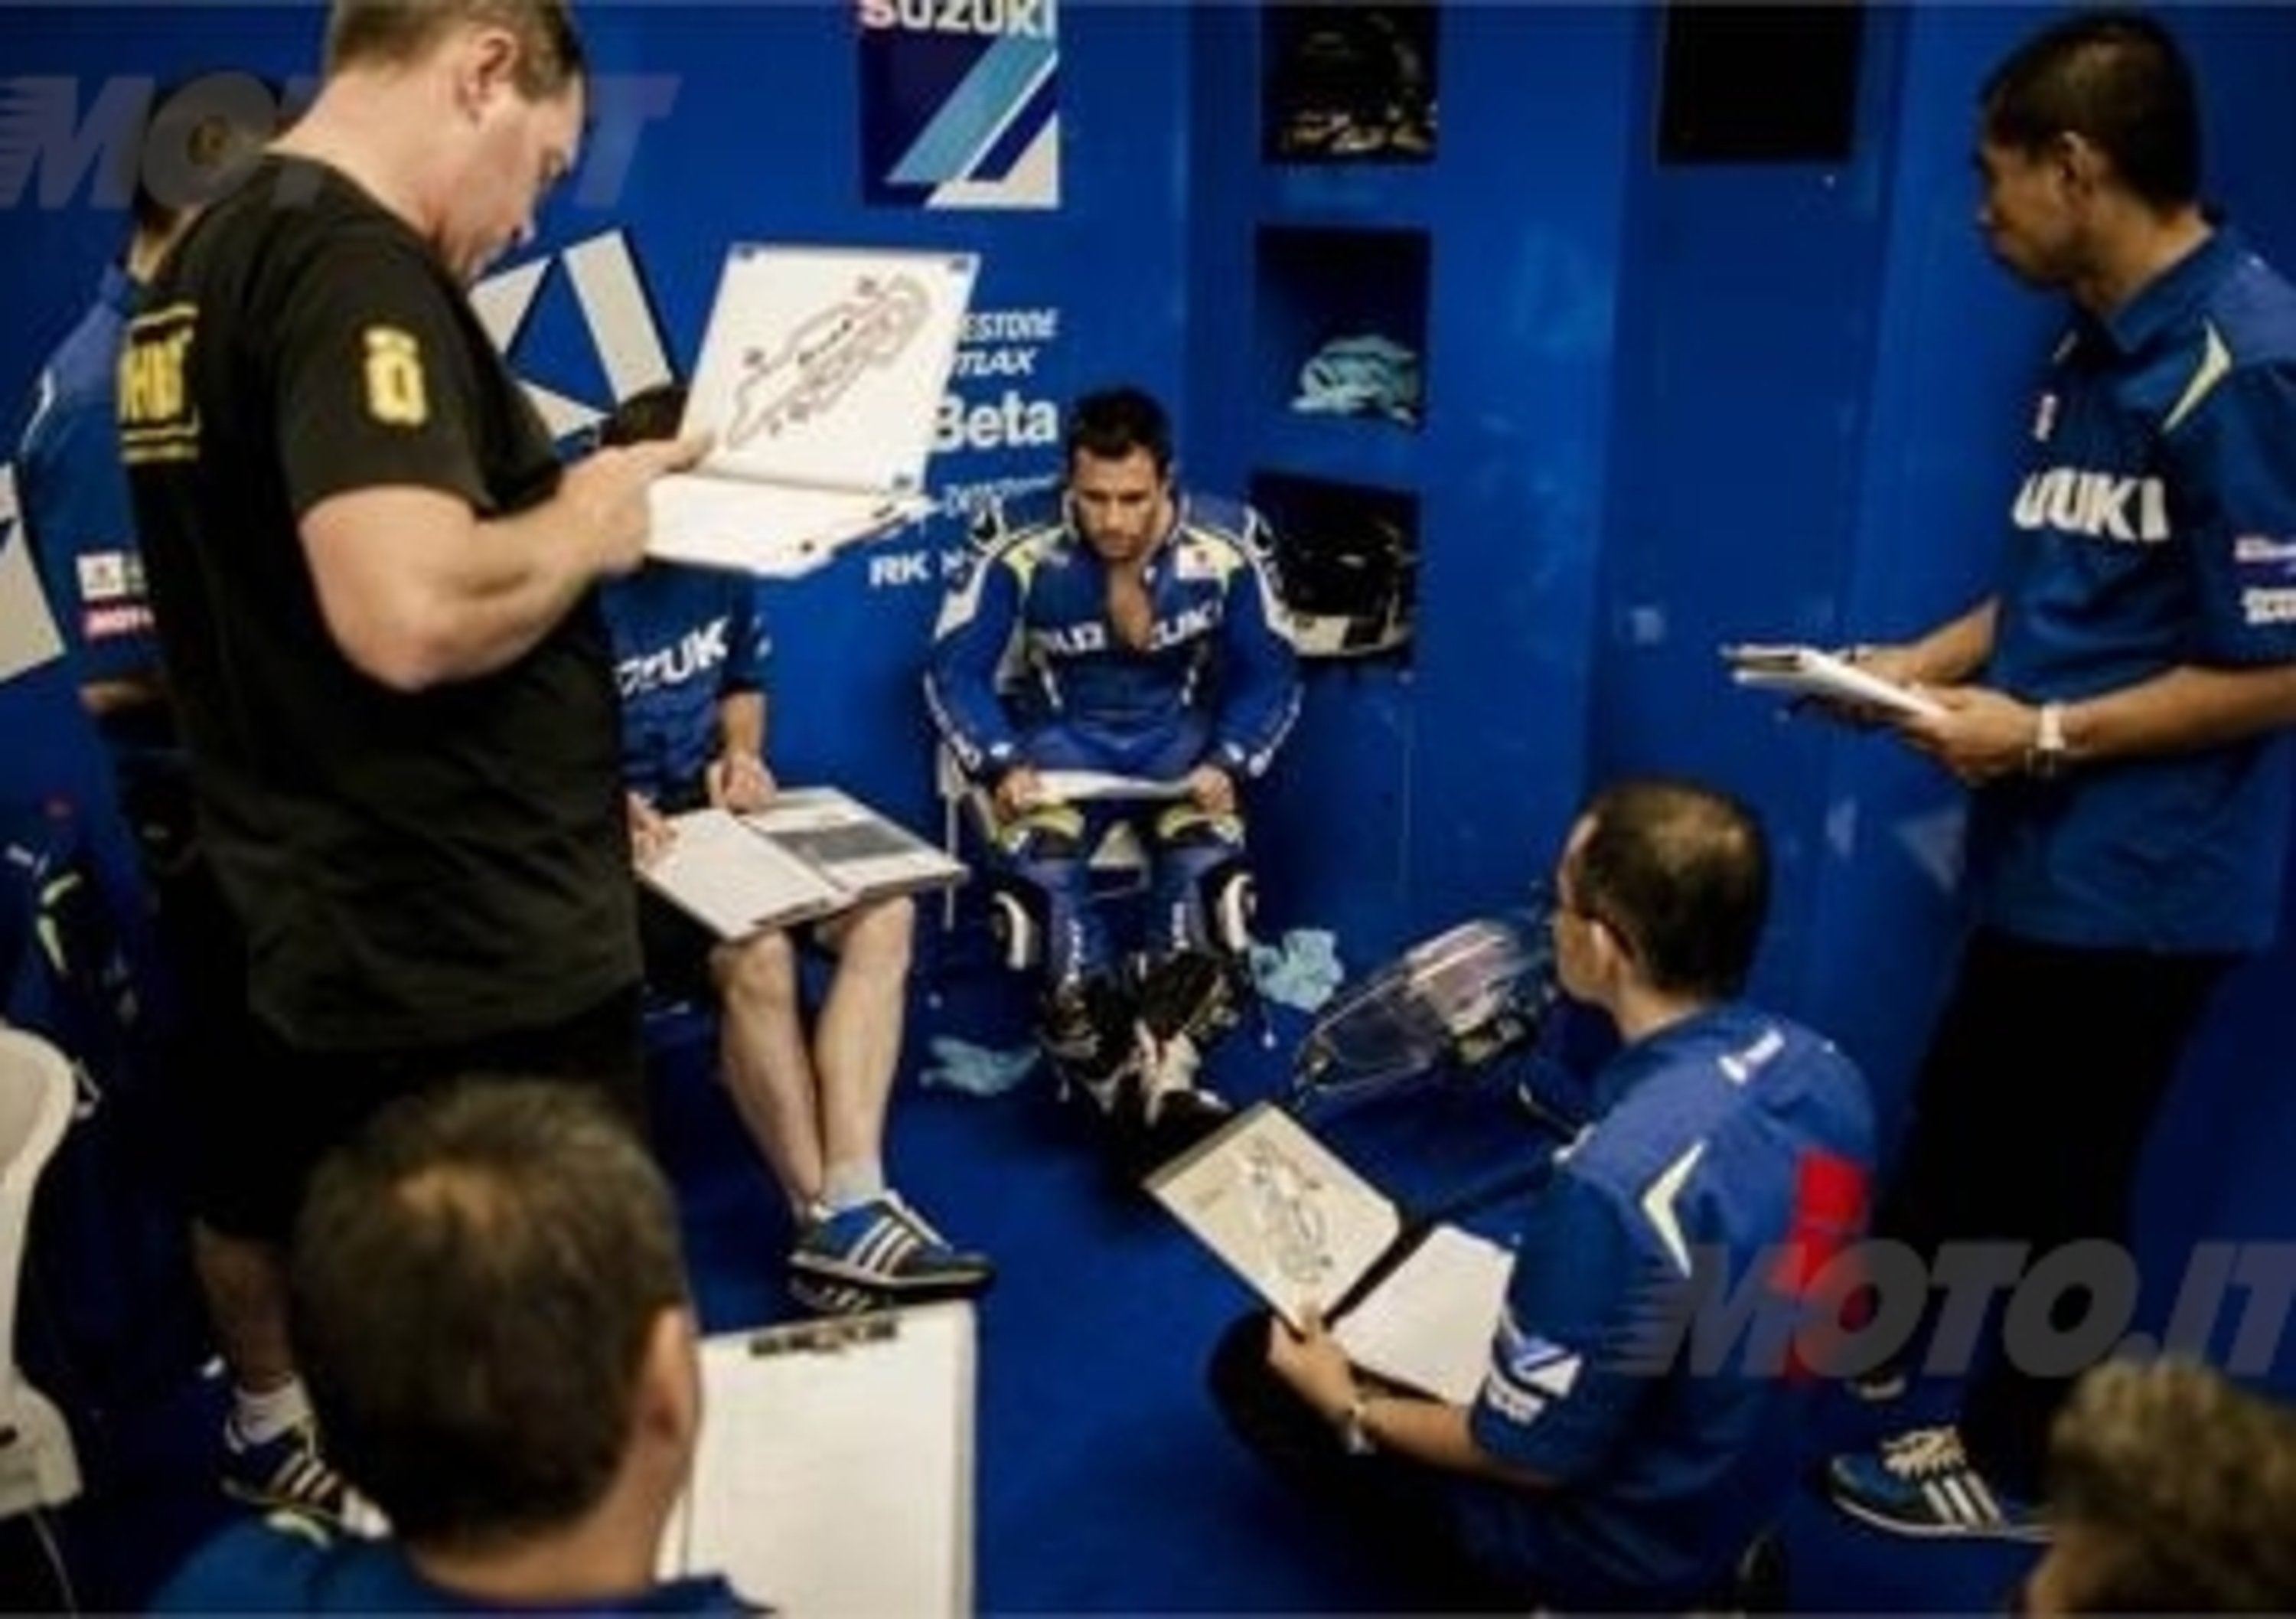 Si concludono al Mugello i test 2013 del team Suzuki MotoGP